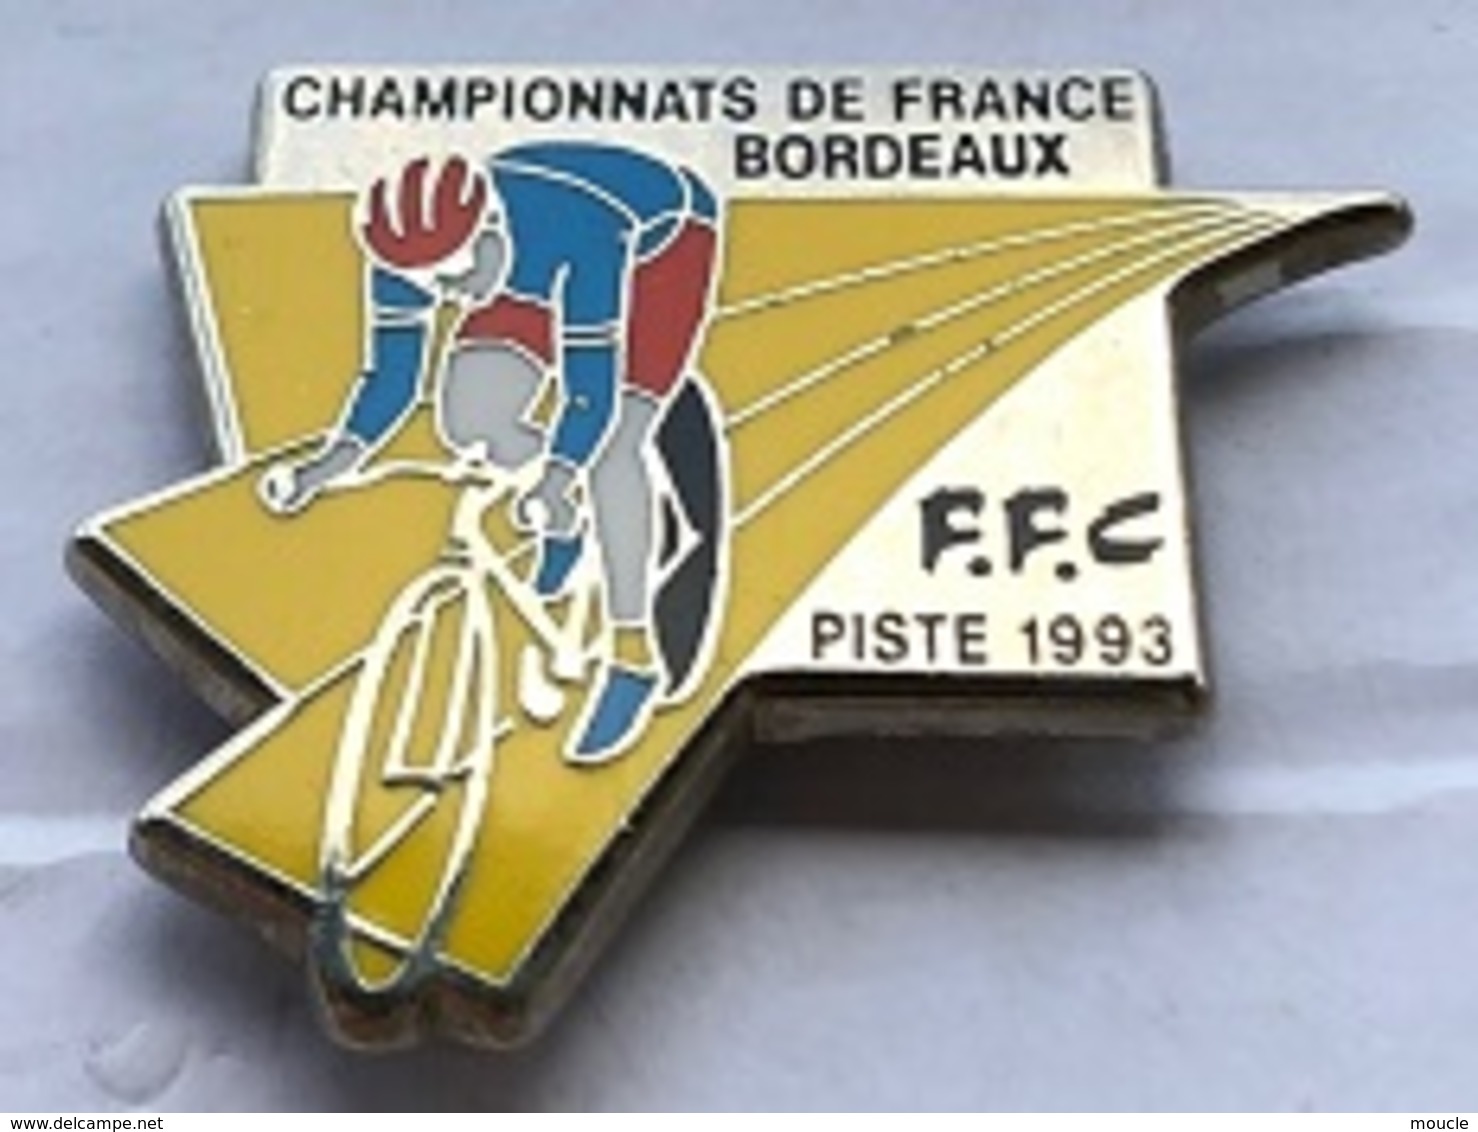 VELO - CYCLISME-CYCLISTE-CHAMPIONNAT DE FRANCE - BORDEAUX - PISTE 1993 - F.F.C - FEDERATION FRANCAISE DE CYCLISME- (23) - Cycling